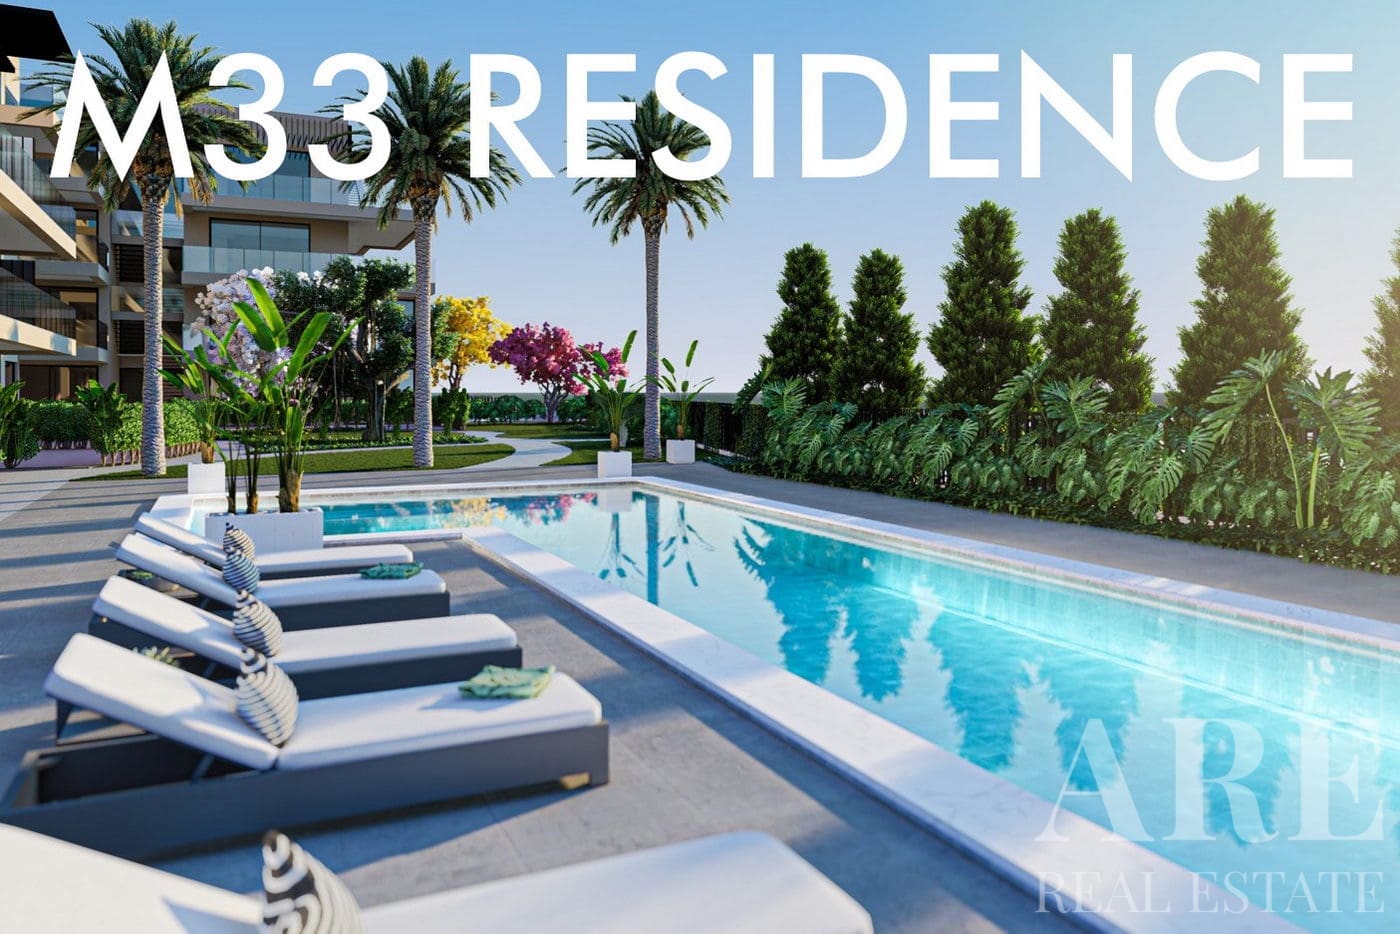 M33 Residence condominium presentation